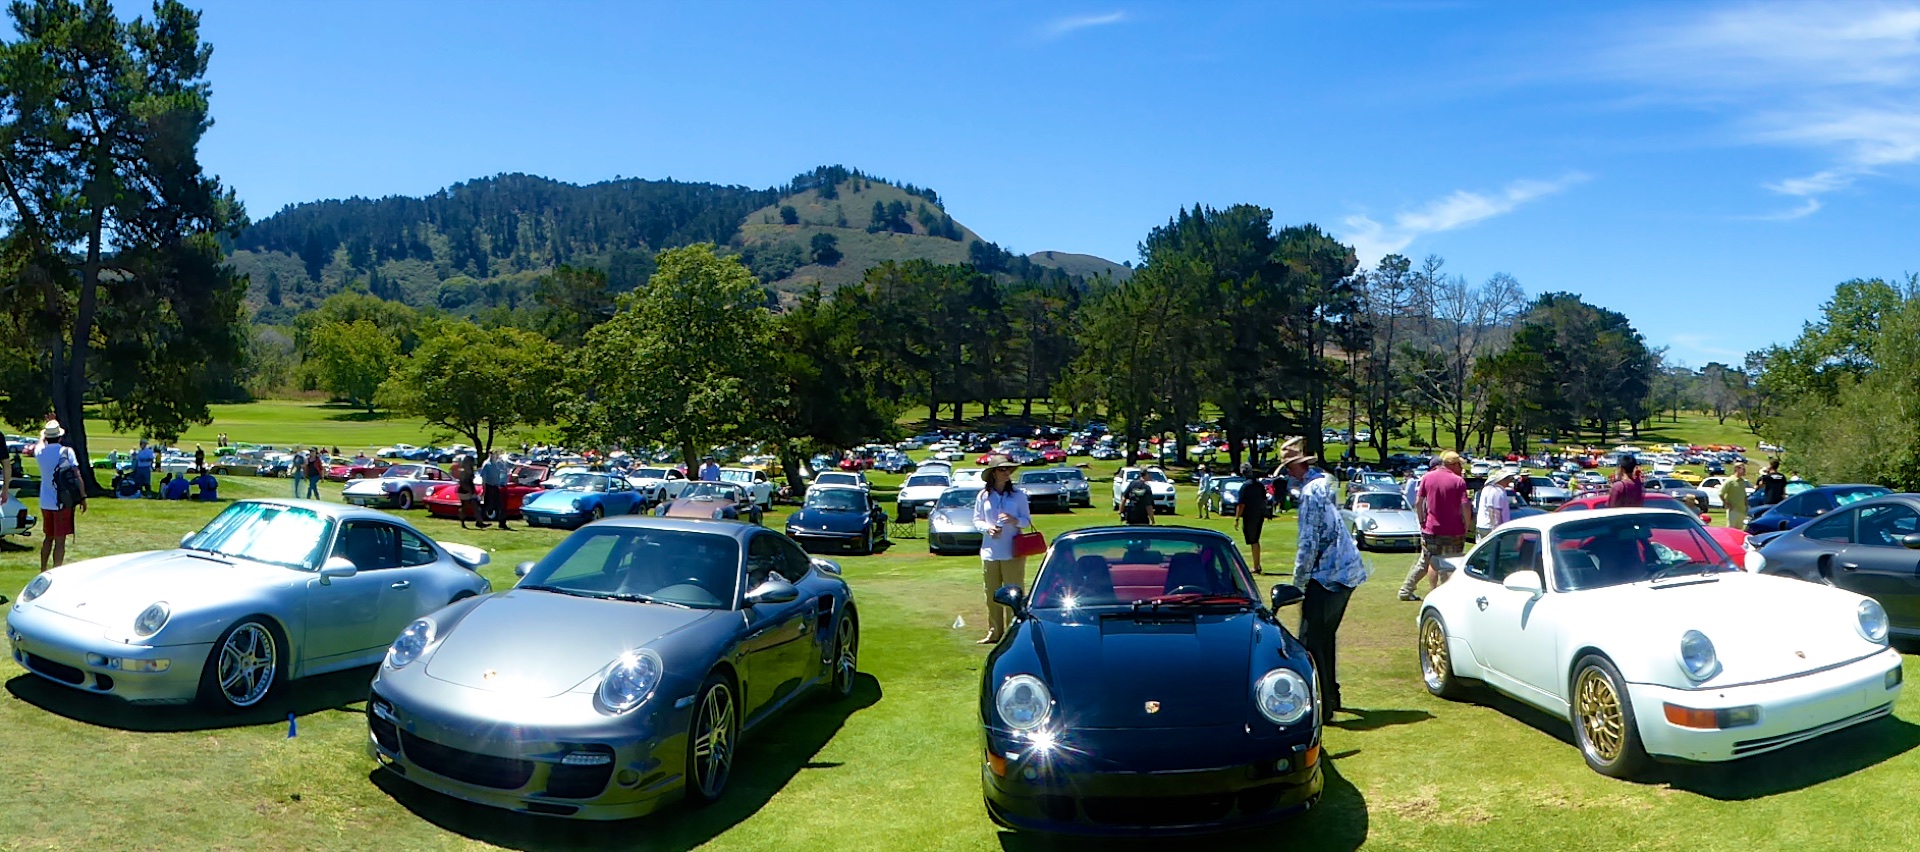 Monterey Historics Porsche 911's at Porsche Werks Reunion, Carmel-by-the-Sea, California, USA